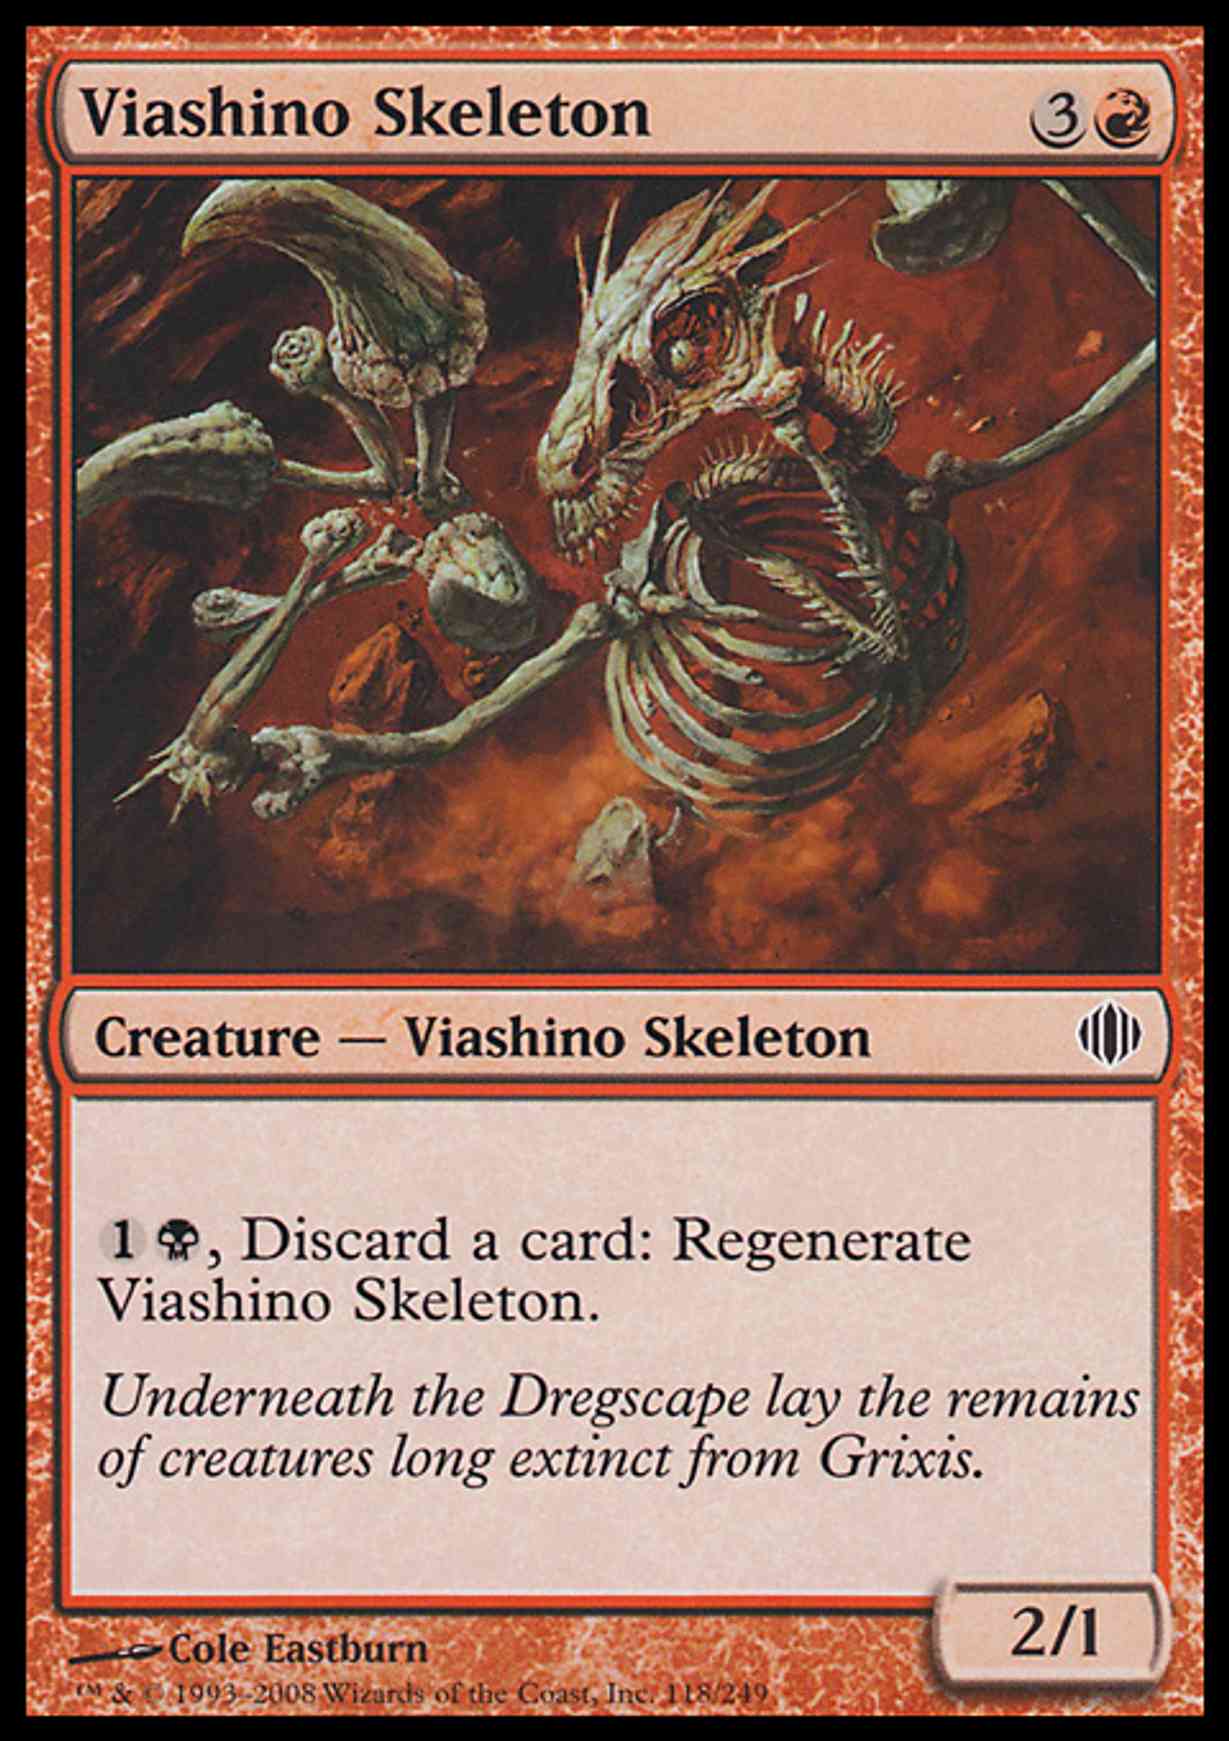 Viashino Skeleton magic card front